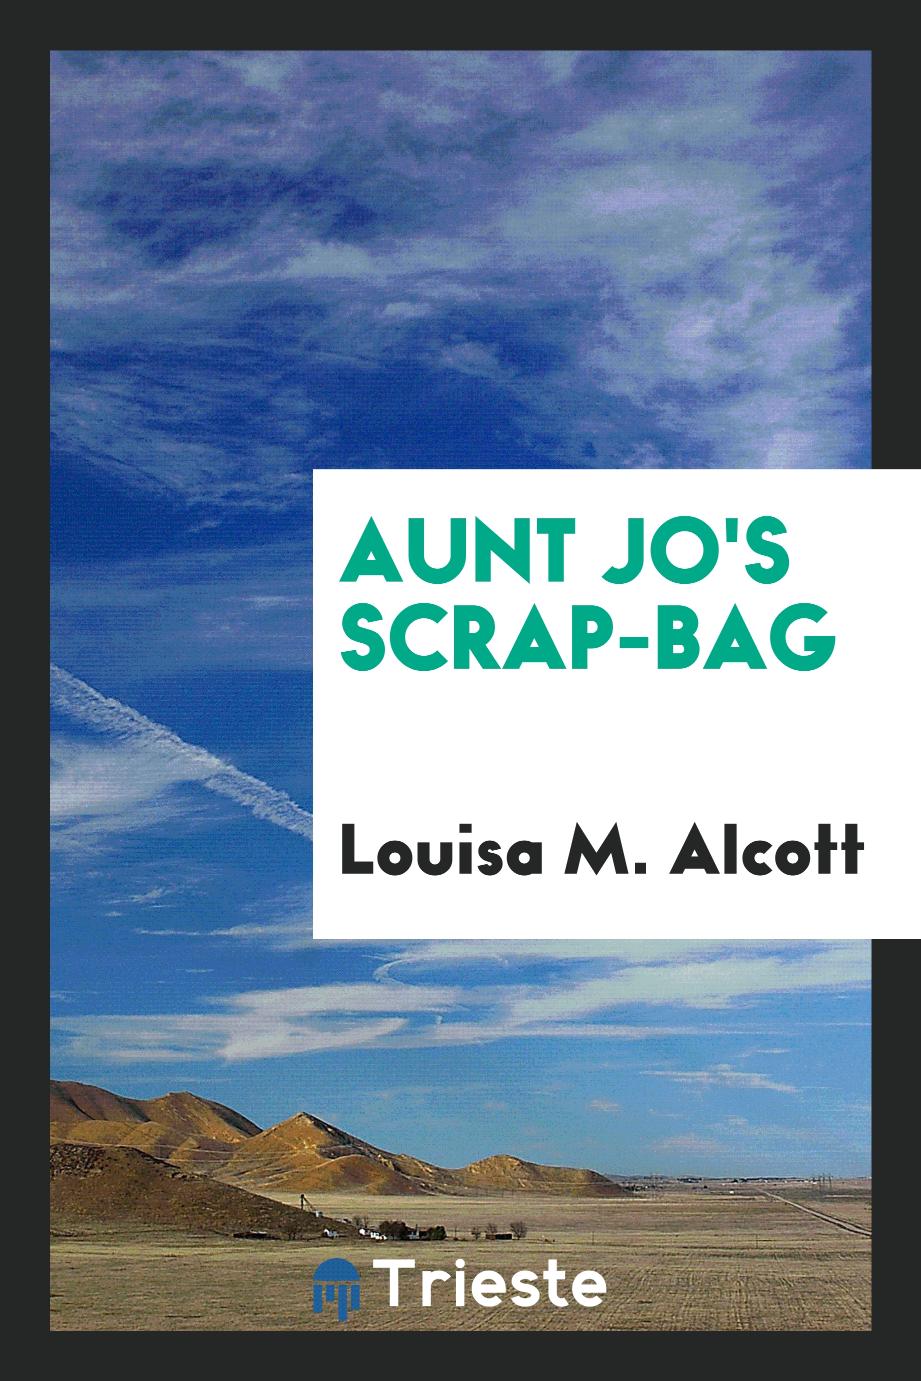 Aunt Jo's scrap-bag